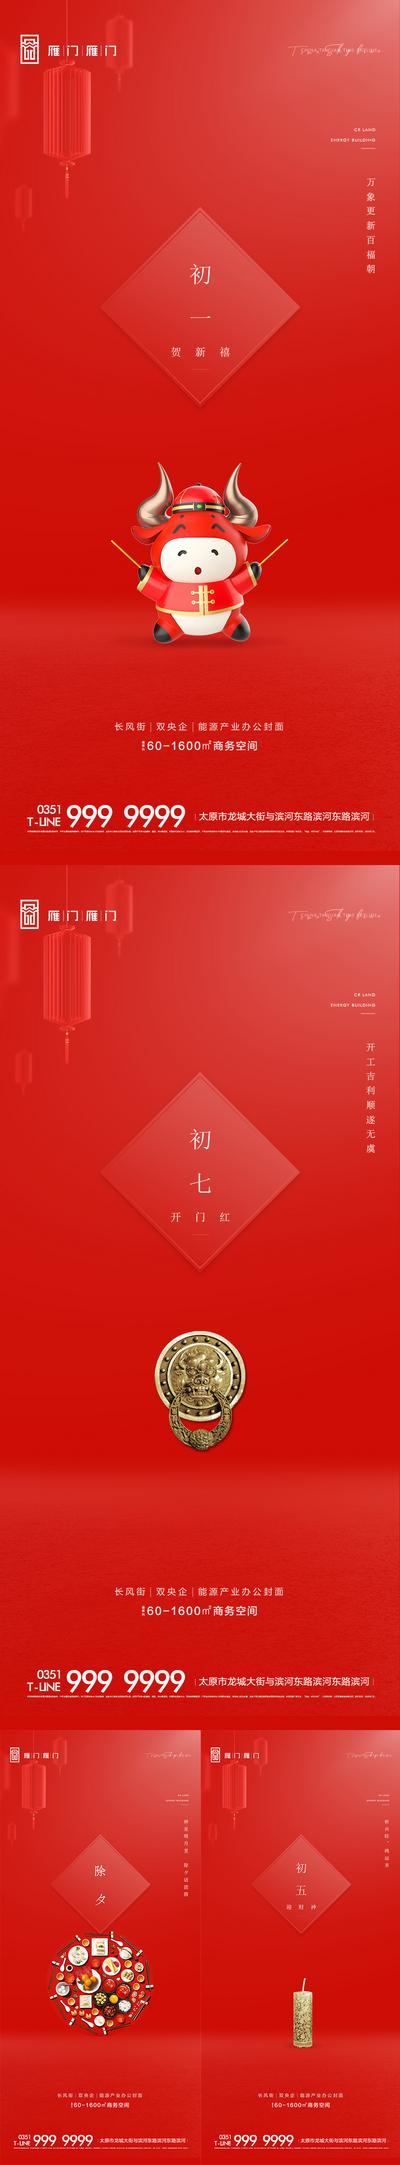 南门网 海报 中国传统节日 新年 春节  年俗  除夕 年夜饭 初一  初五 初七 拜年 系列